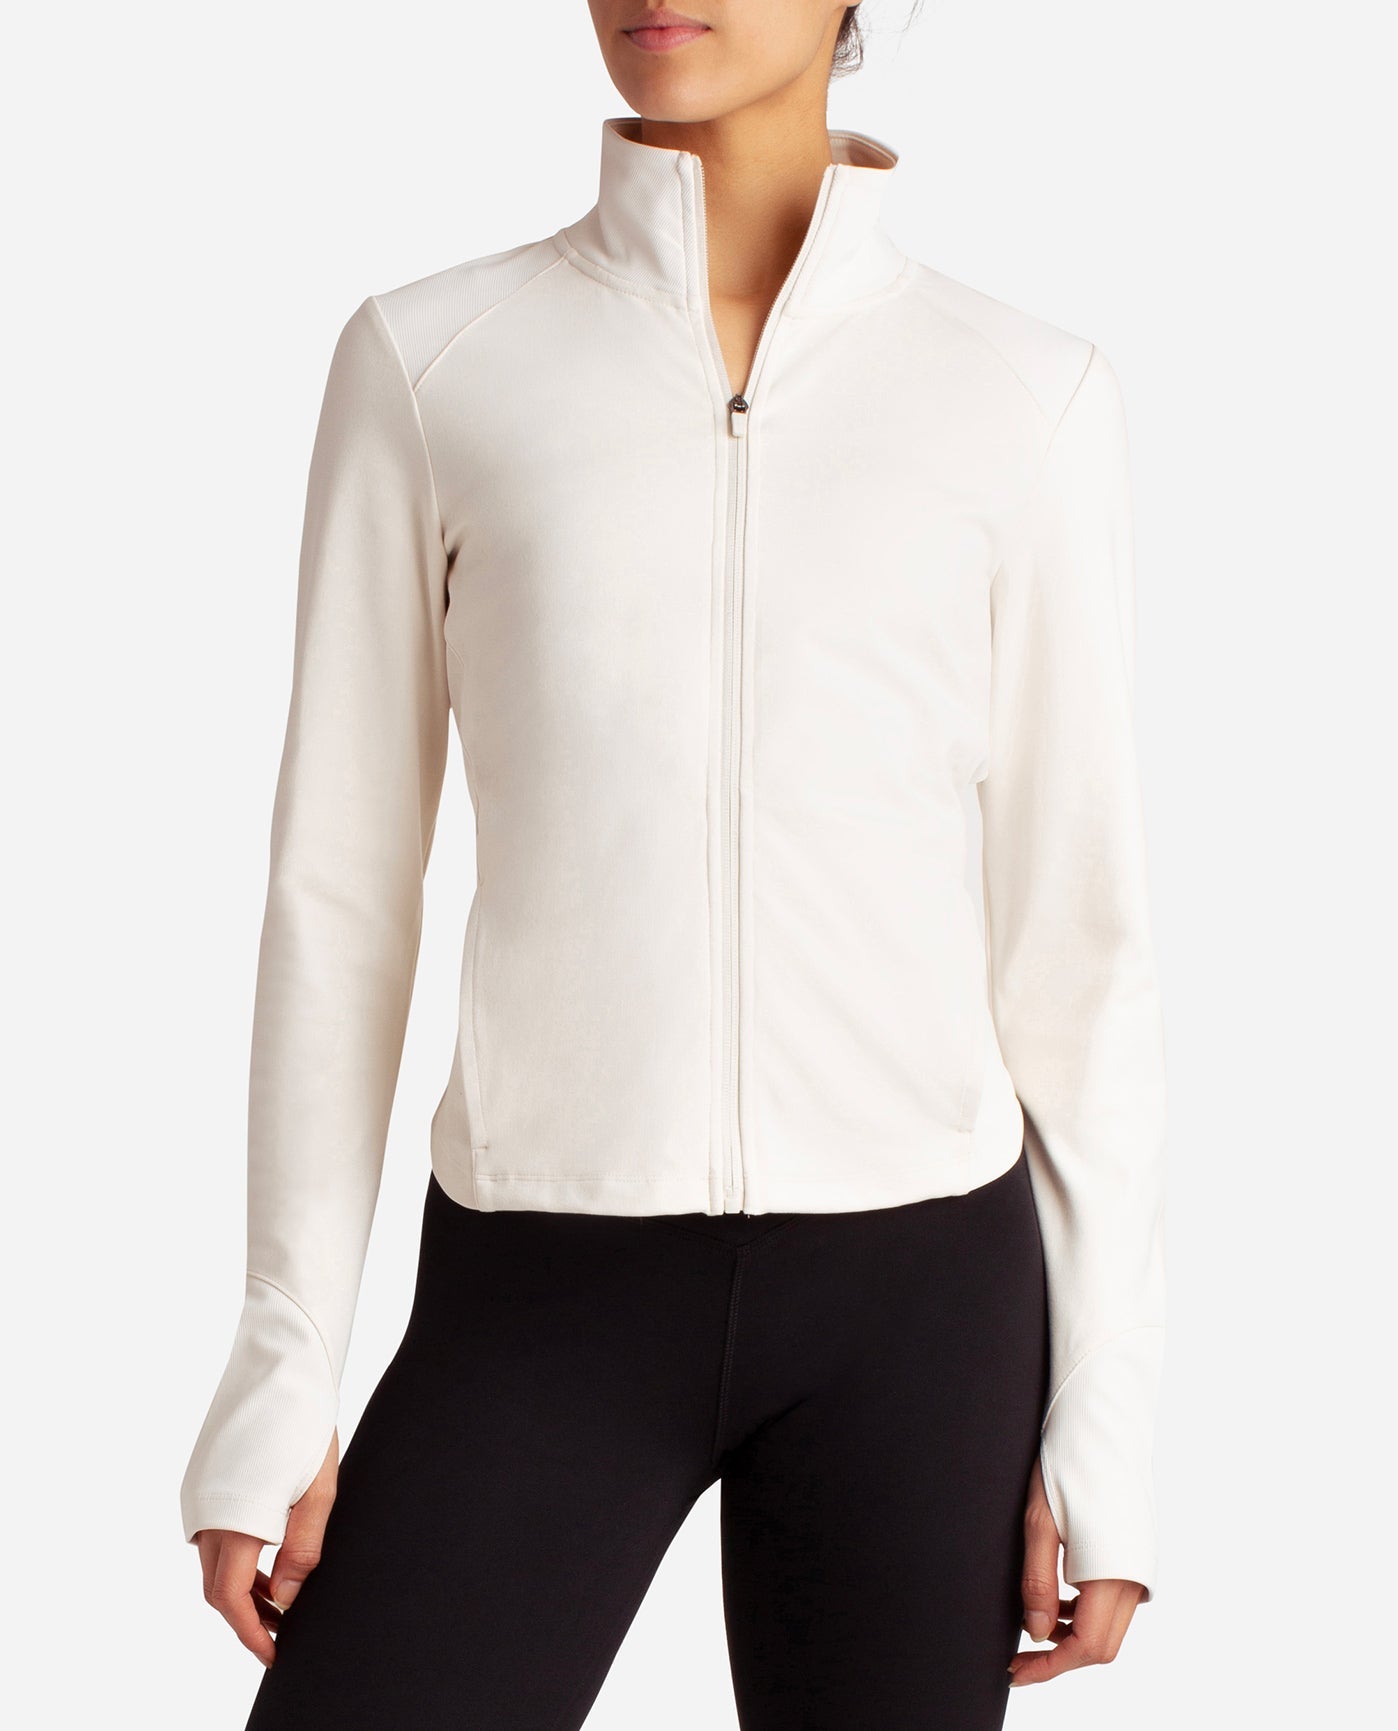 Danskin Now Jacket Size XL - $12 - From Flippin